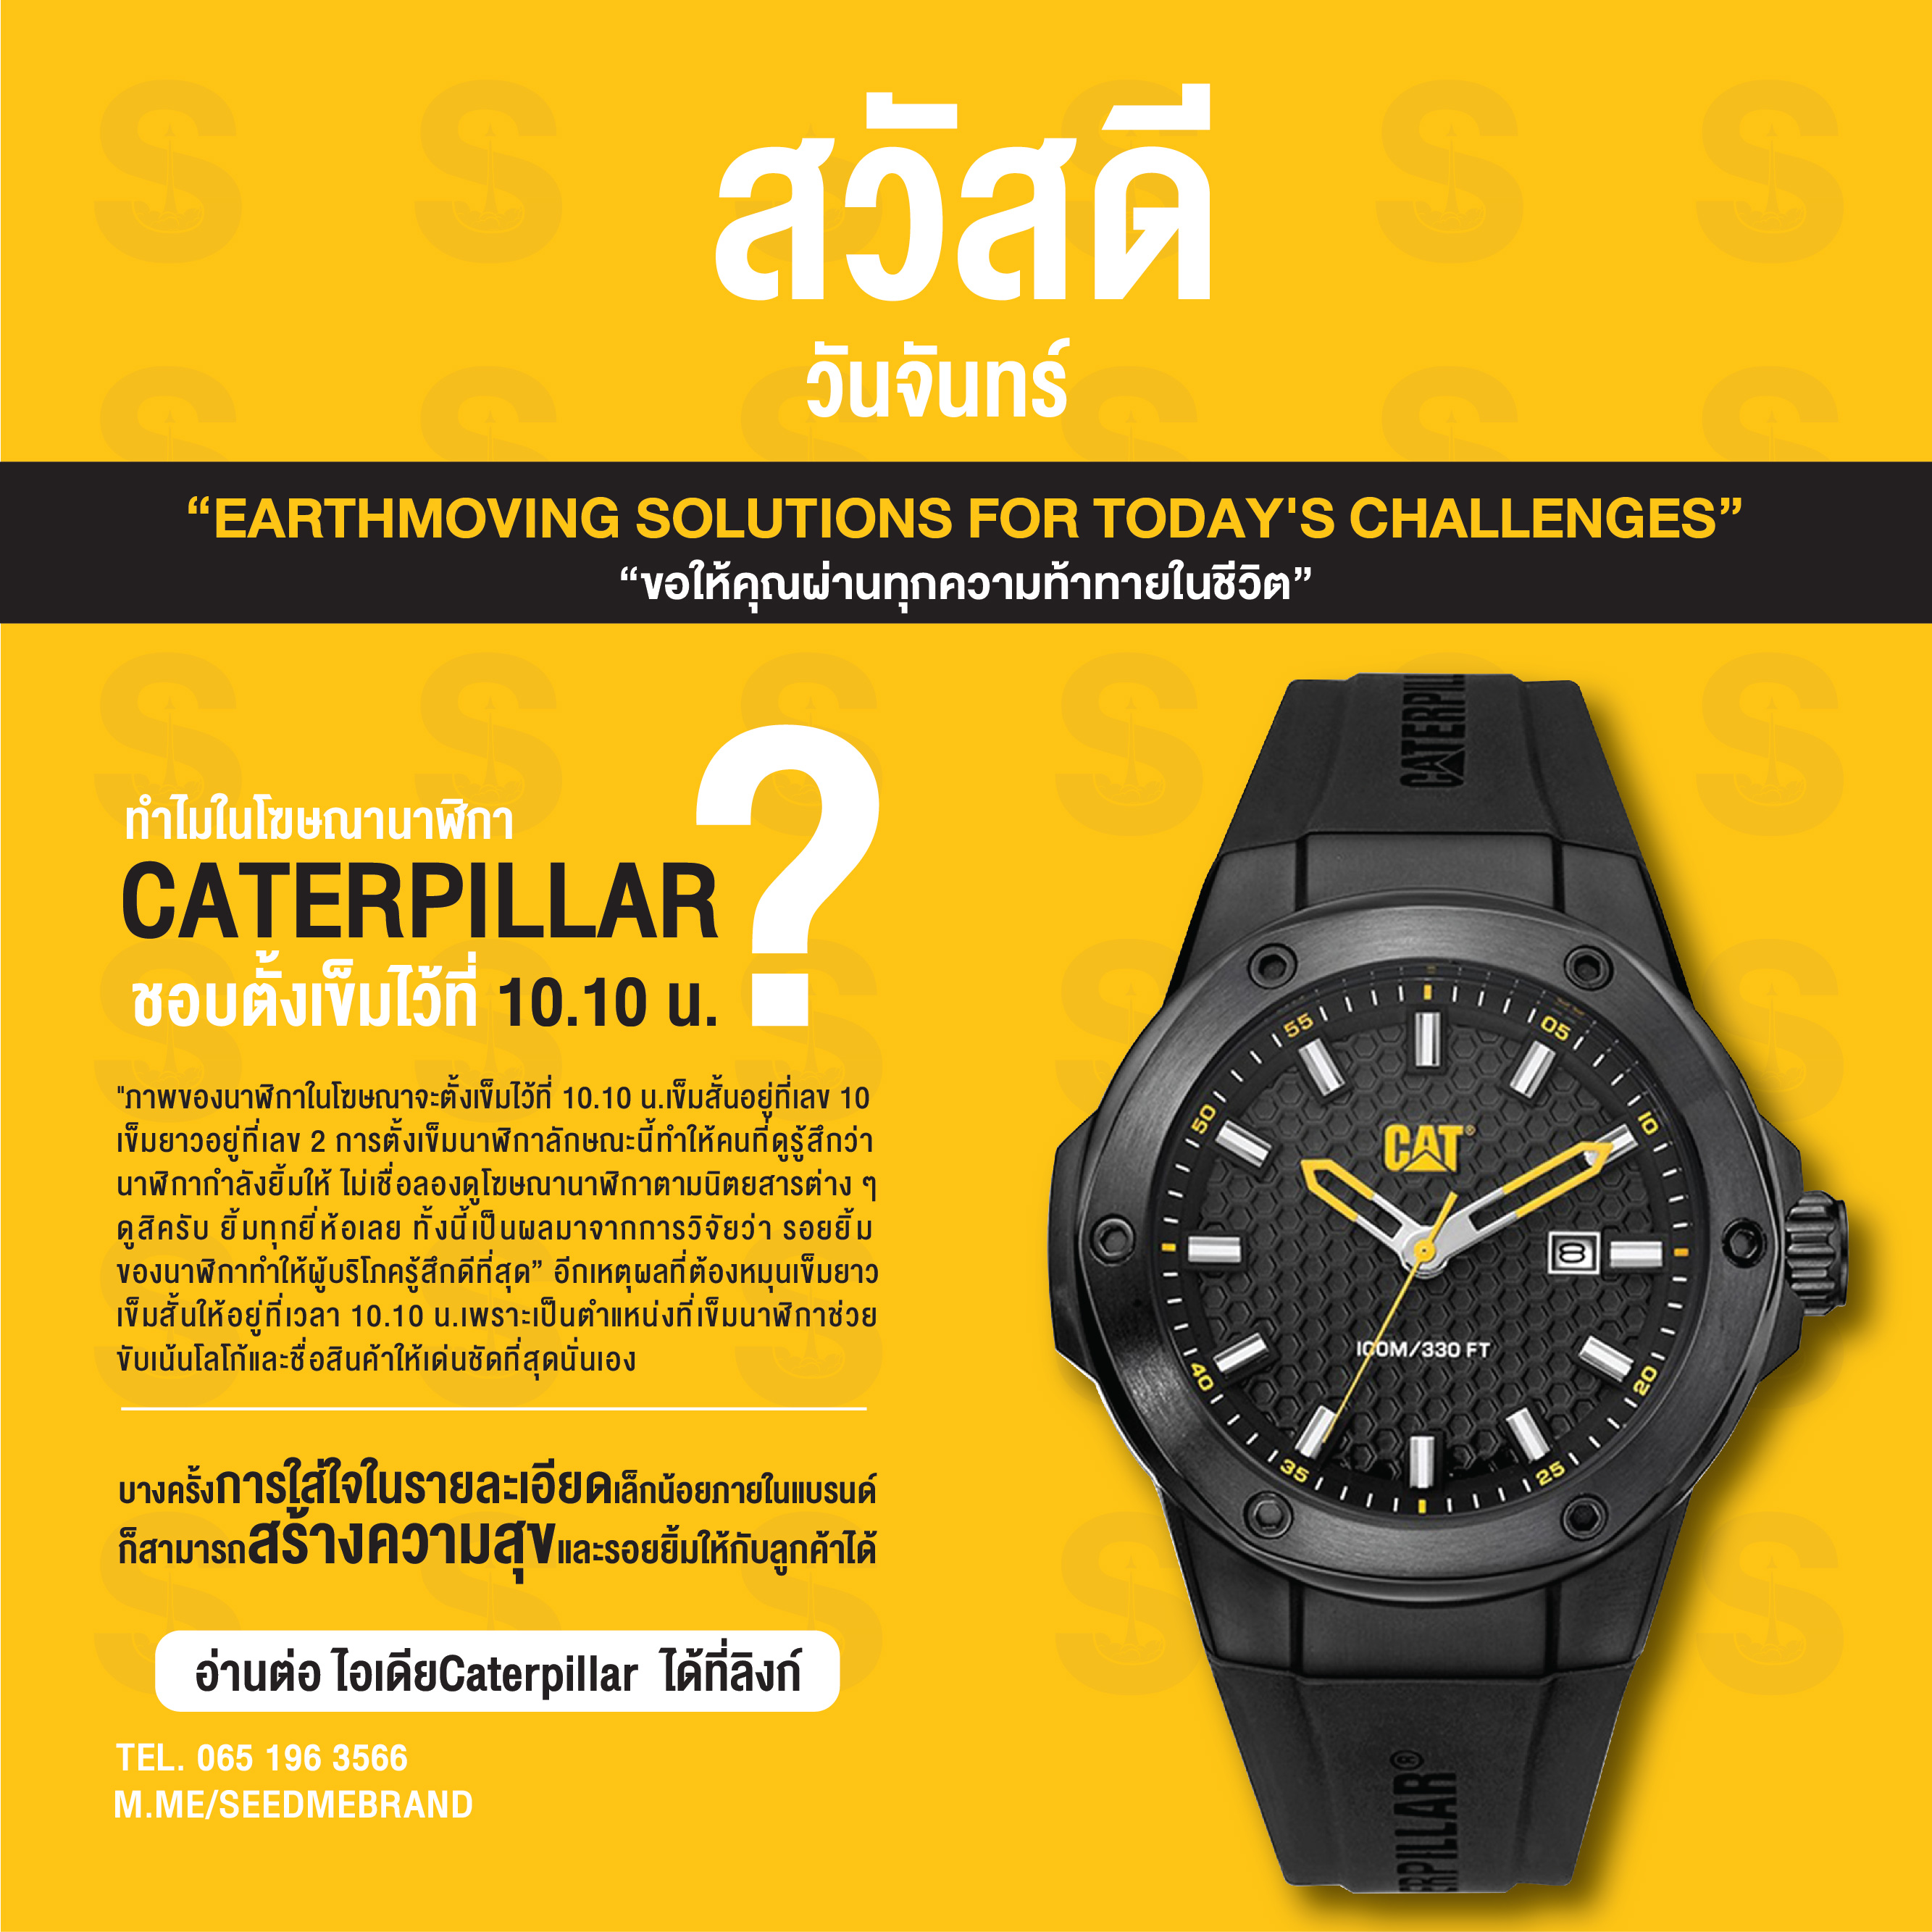 ทำไมในโฆษณานาฬิกา Caterpillar ชอบตั้งเข็มไว้ ที่ 10.10 น.?